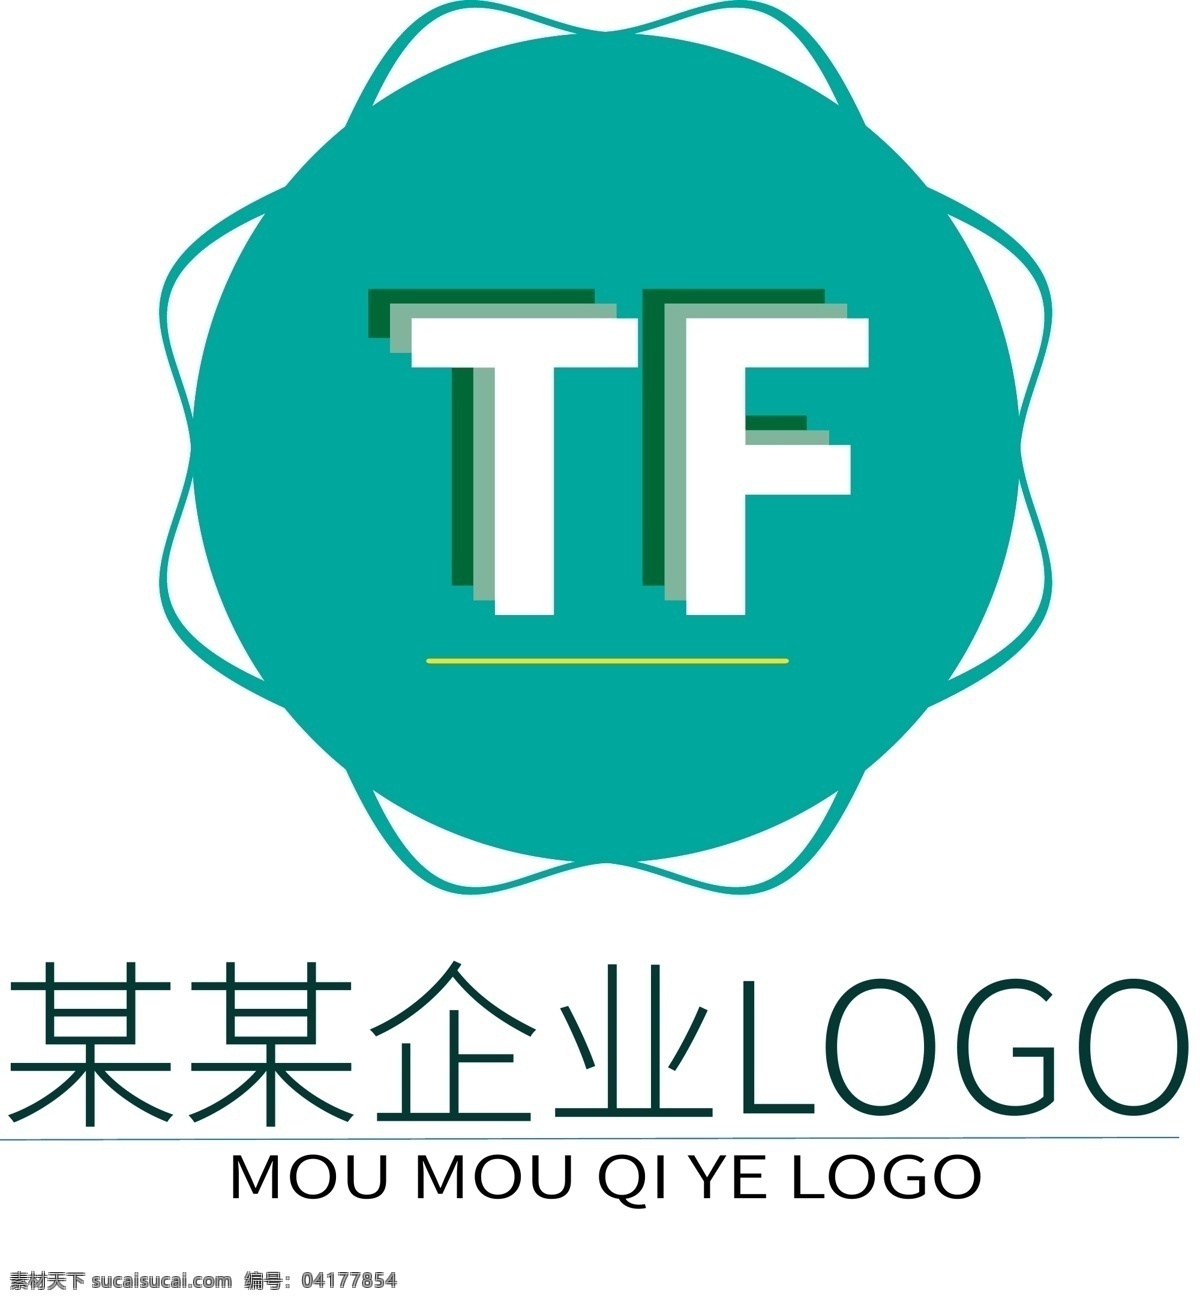 原创 tf 蓝色 简约 企业 logo 原创logo tflogo 蓝色简约 企业logo 蓝色logo 大气